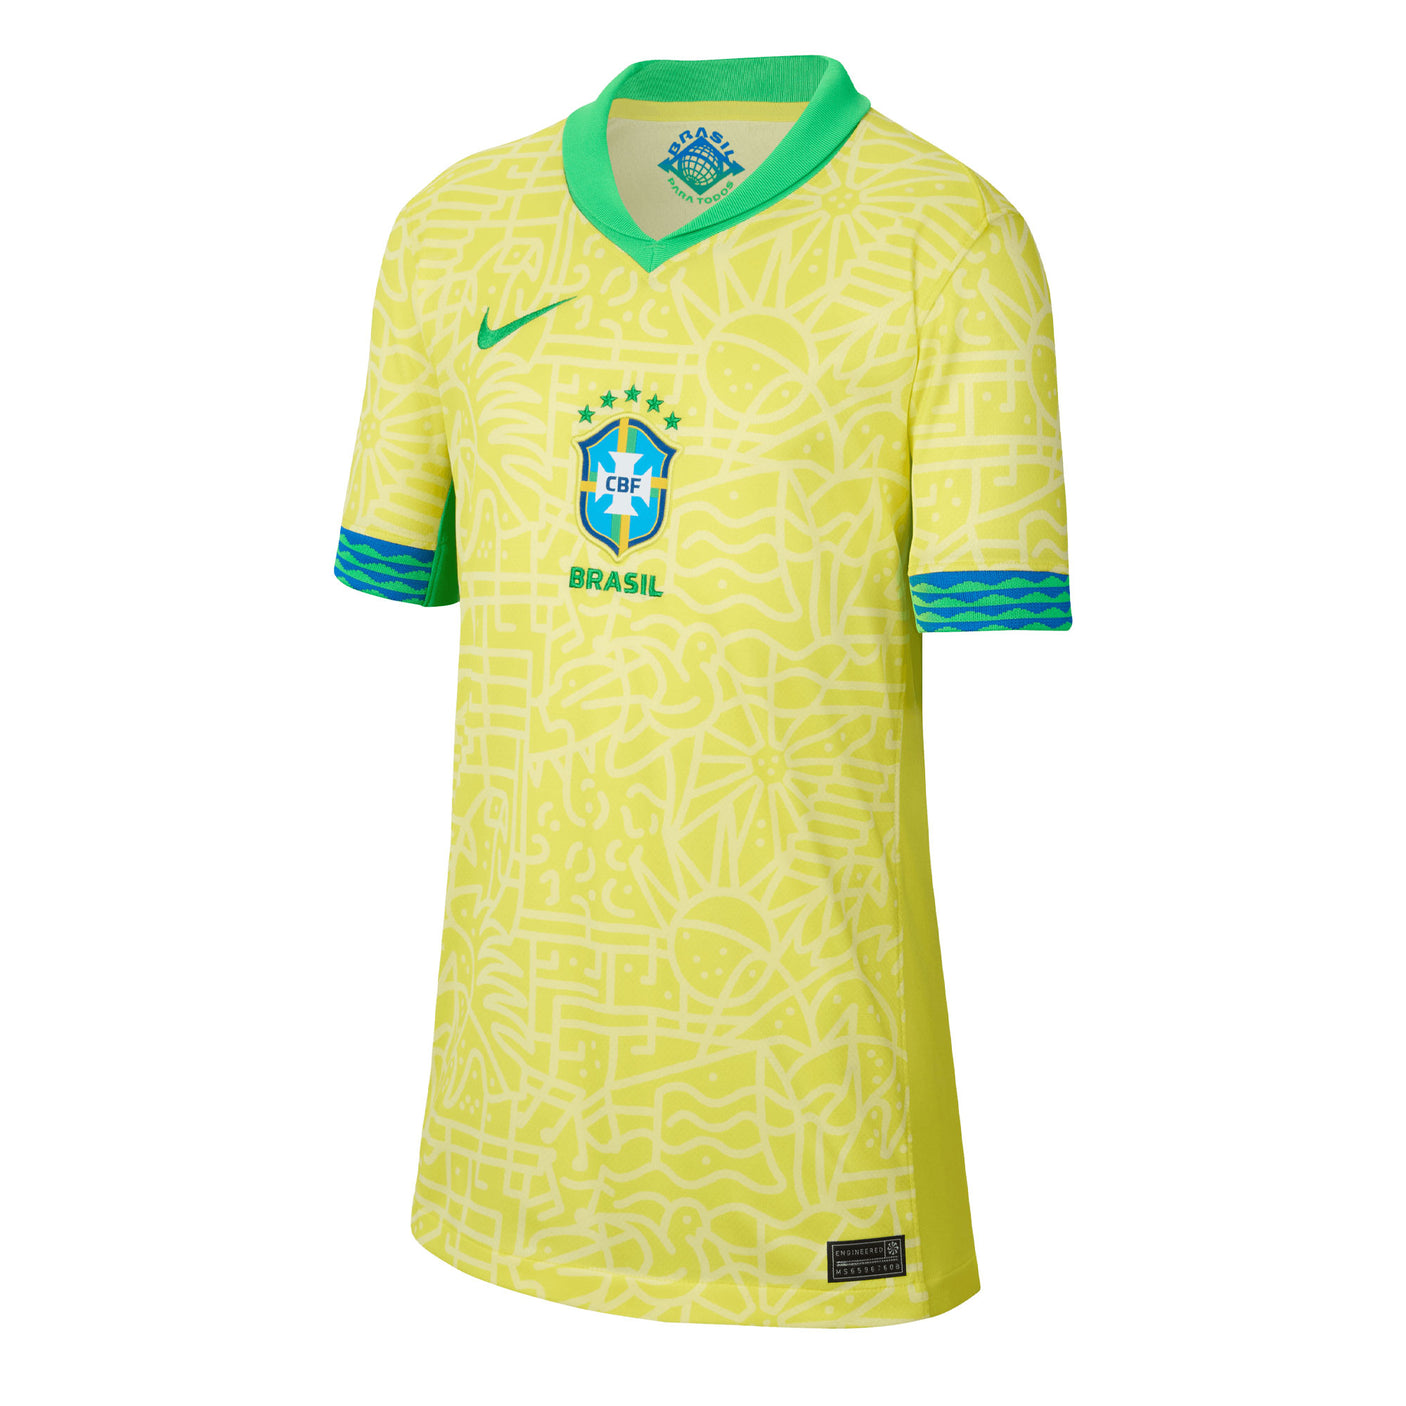 Nike Brazil (CBF) Academy Pro children's pants